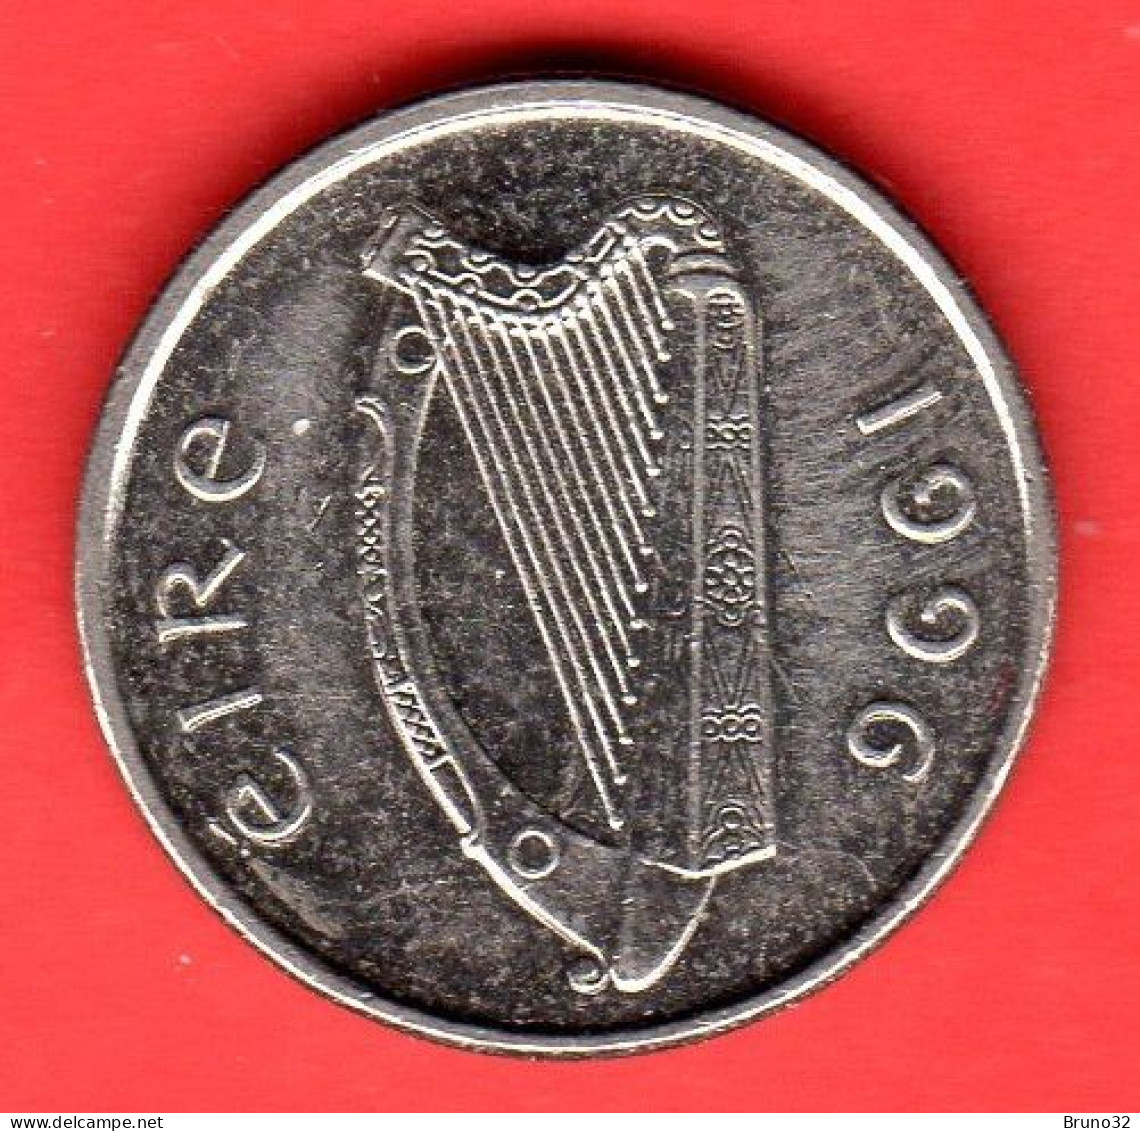 IRLANDA - IRELAND - EIRE - 1996 - 5 Pence - QFDC/aUNC - Come Da Foto - Irlanda